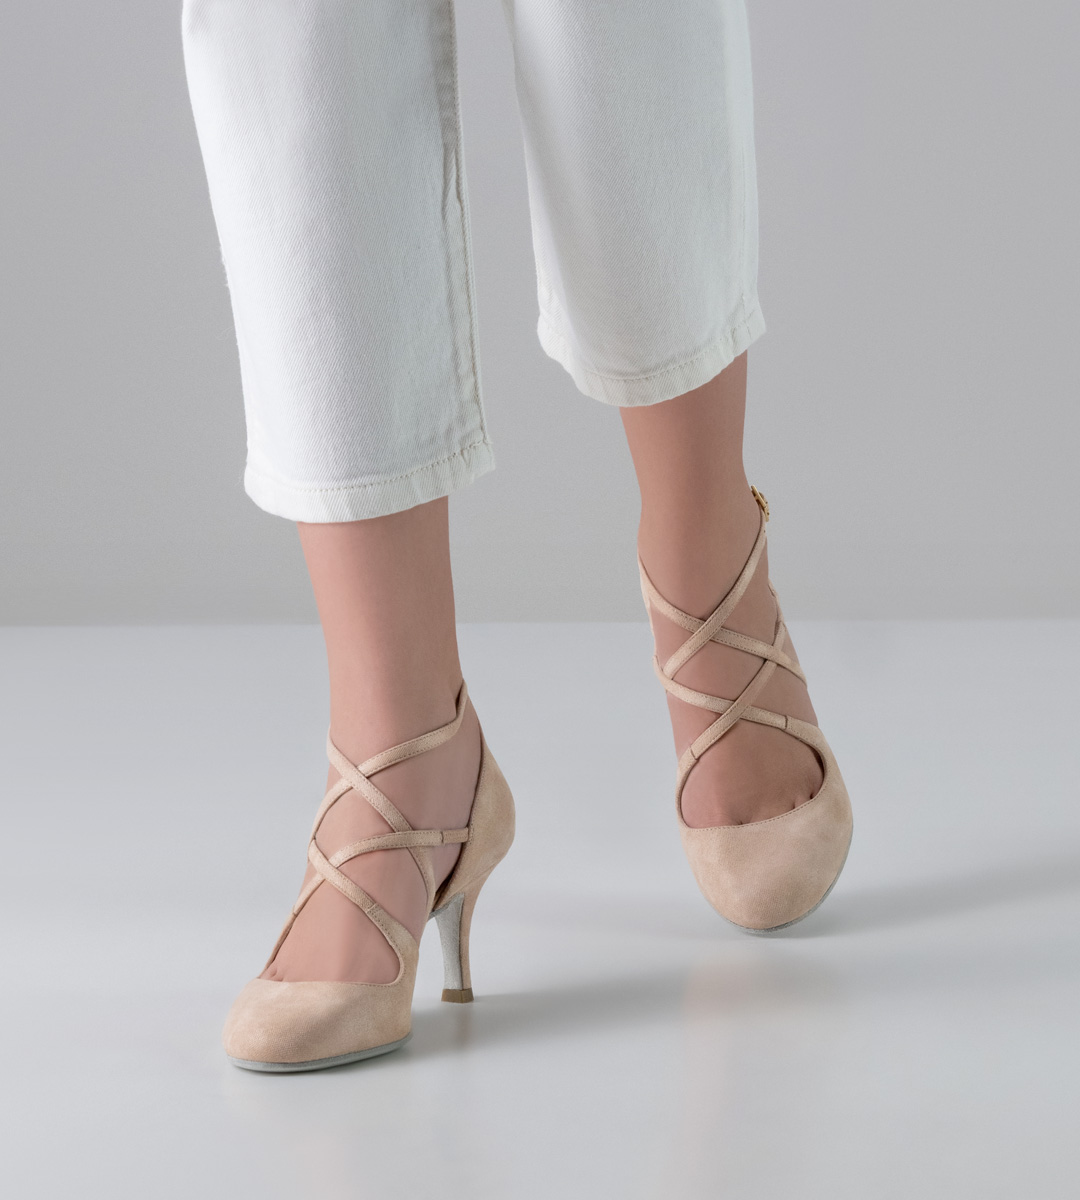 pantalon blanc combiné avec des chaussures de danse pour femmes Nueva Epoca de 7 cm de haut